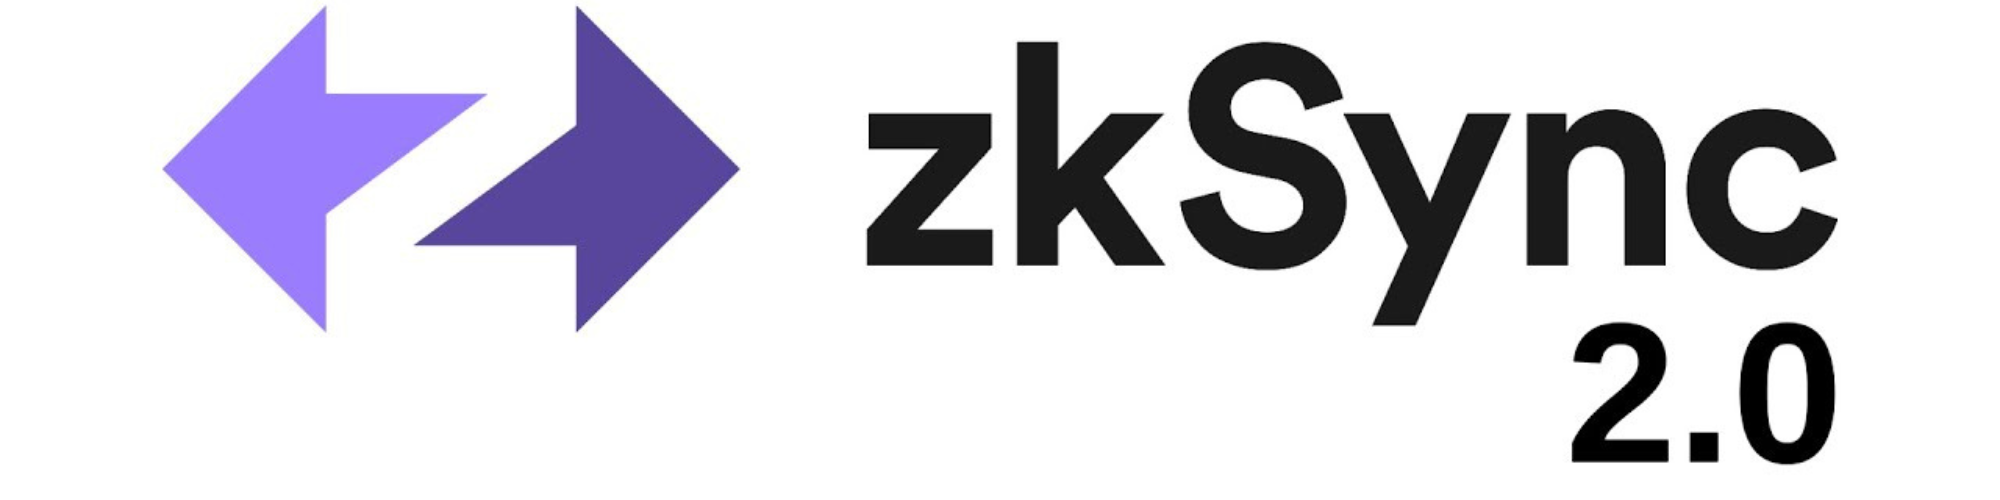 zkSync hizó una regenesis que solo tendra impacto en la zkSync 2.0